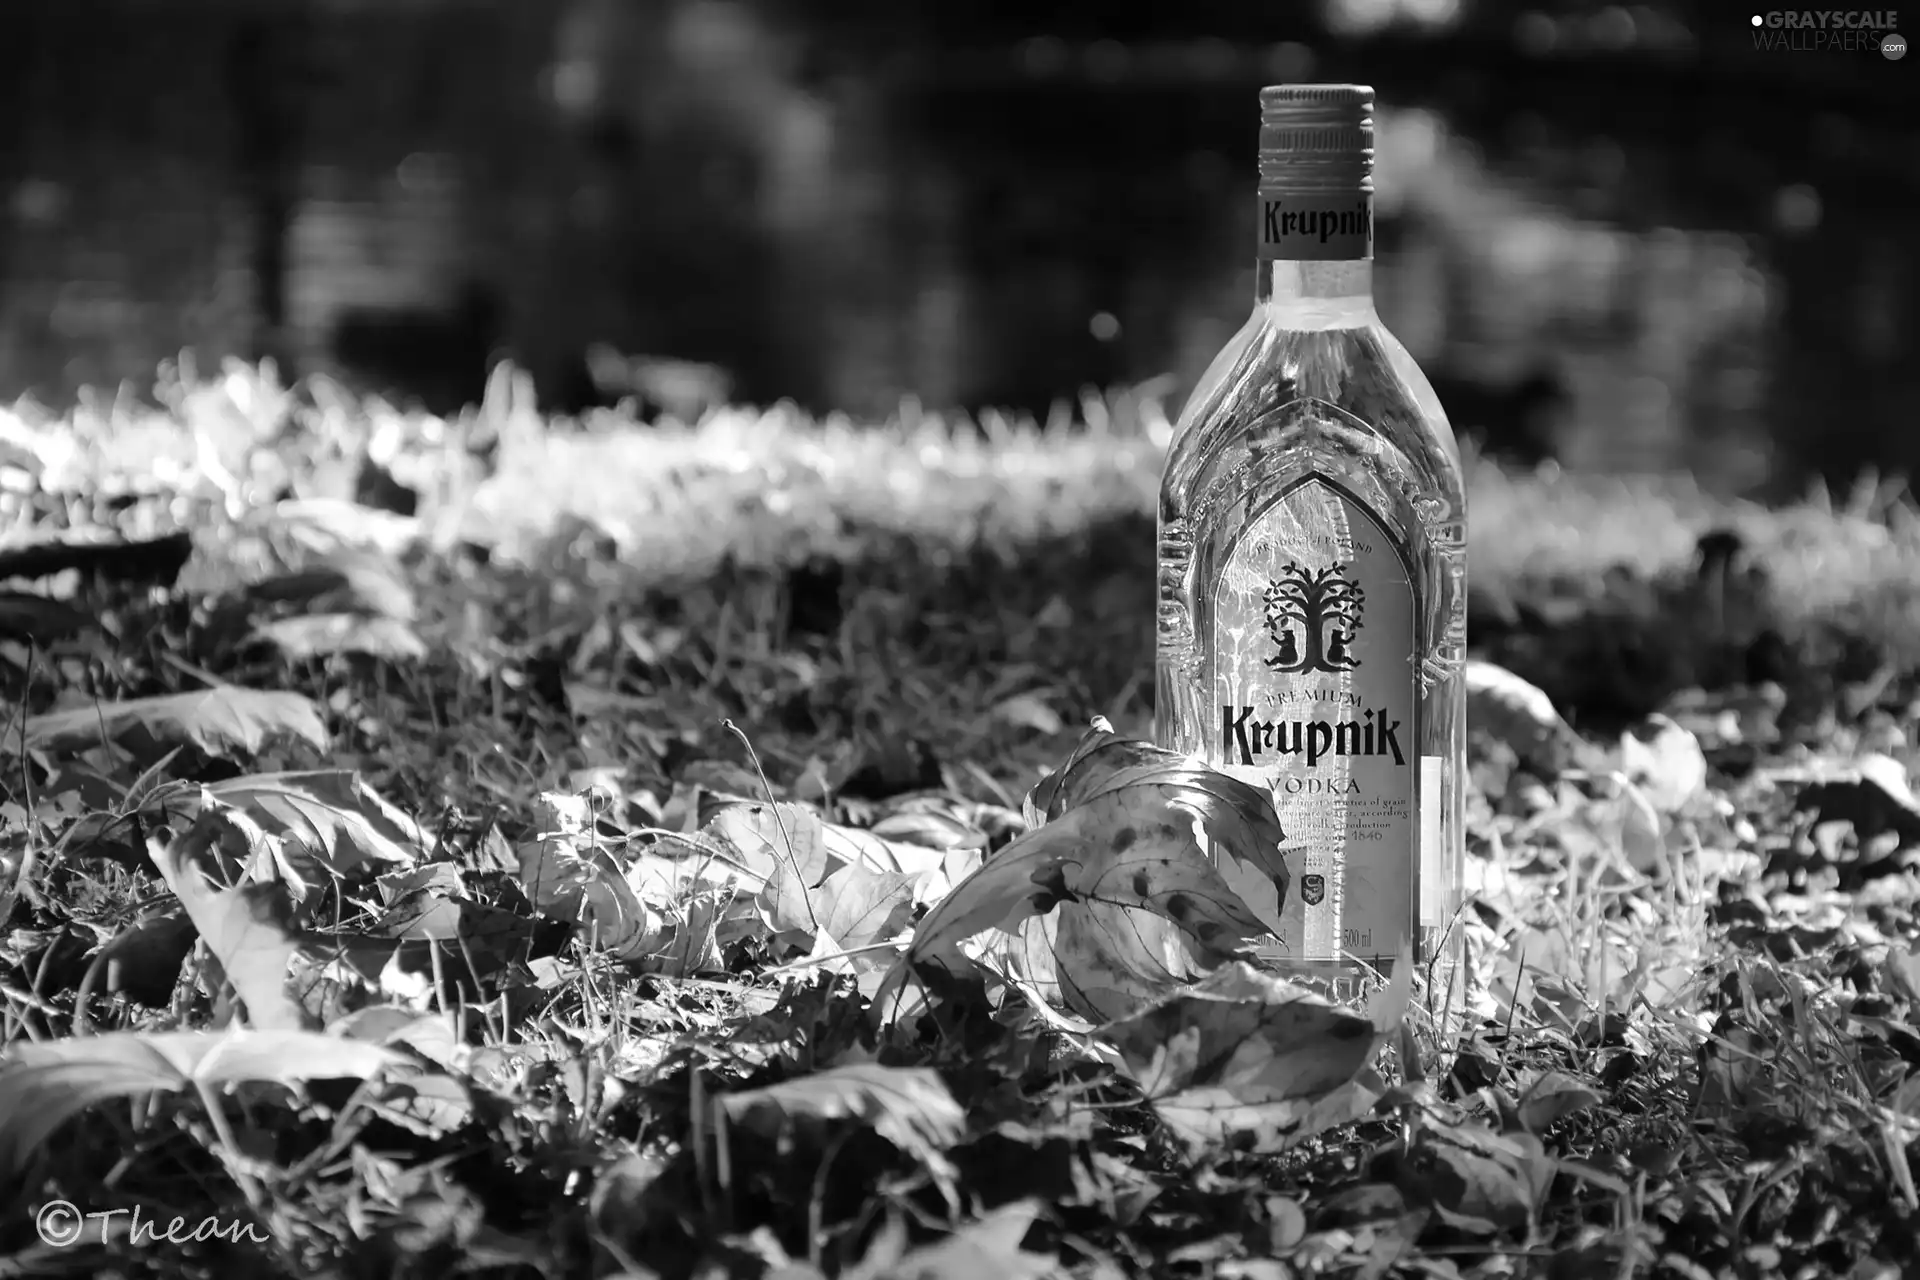 Krupnik, vodka, grass, Leaf, Bottle, Poland